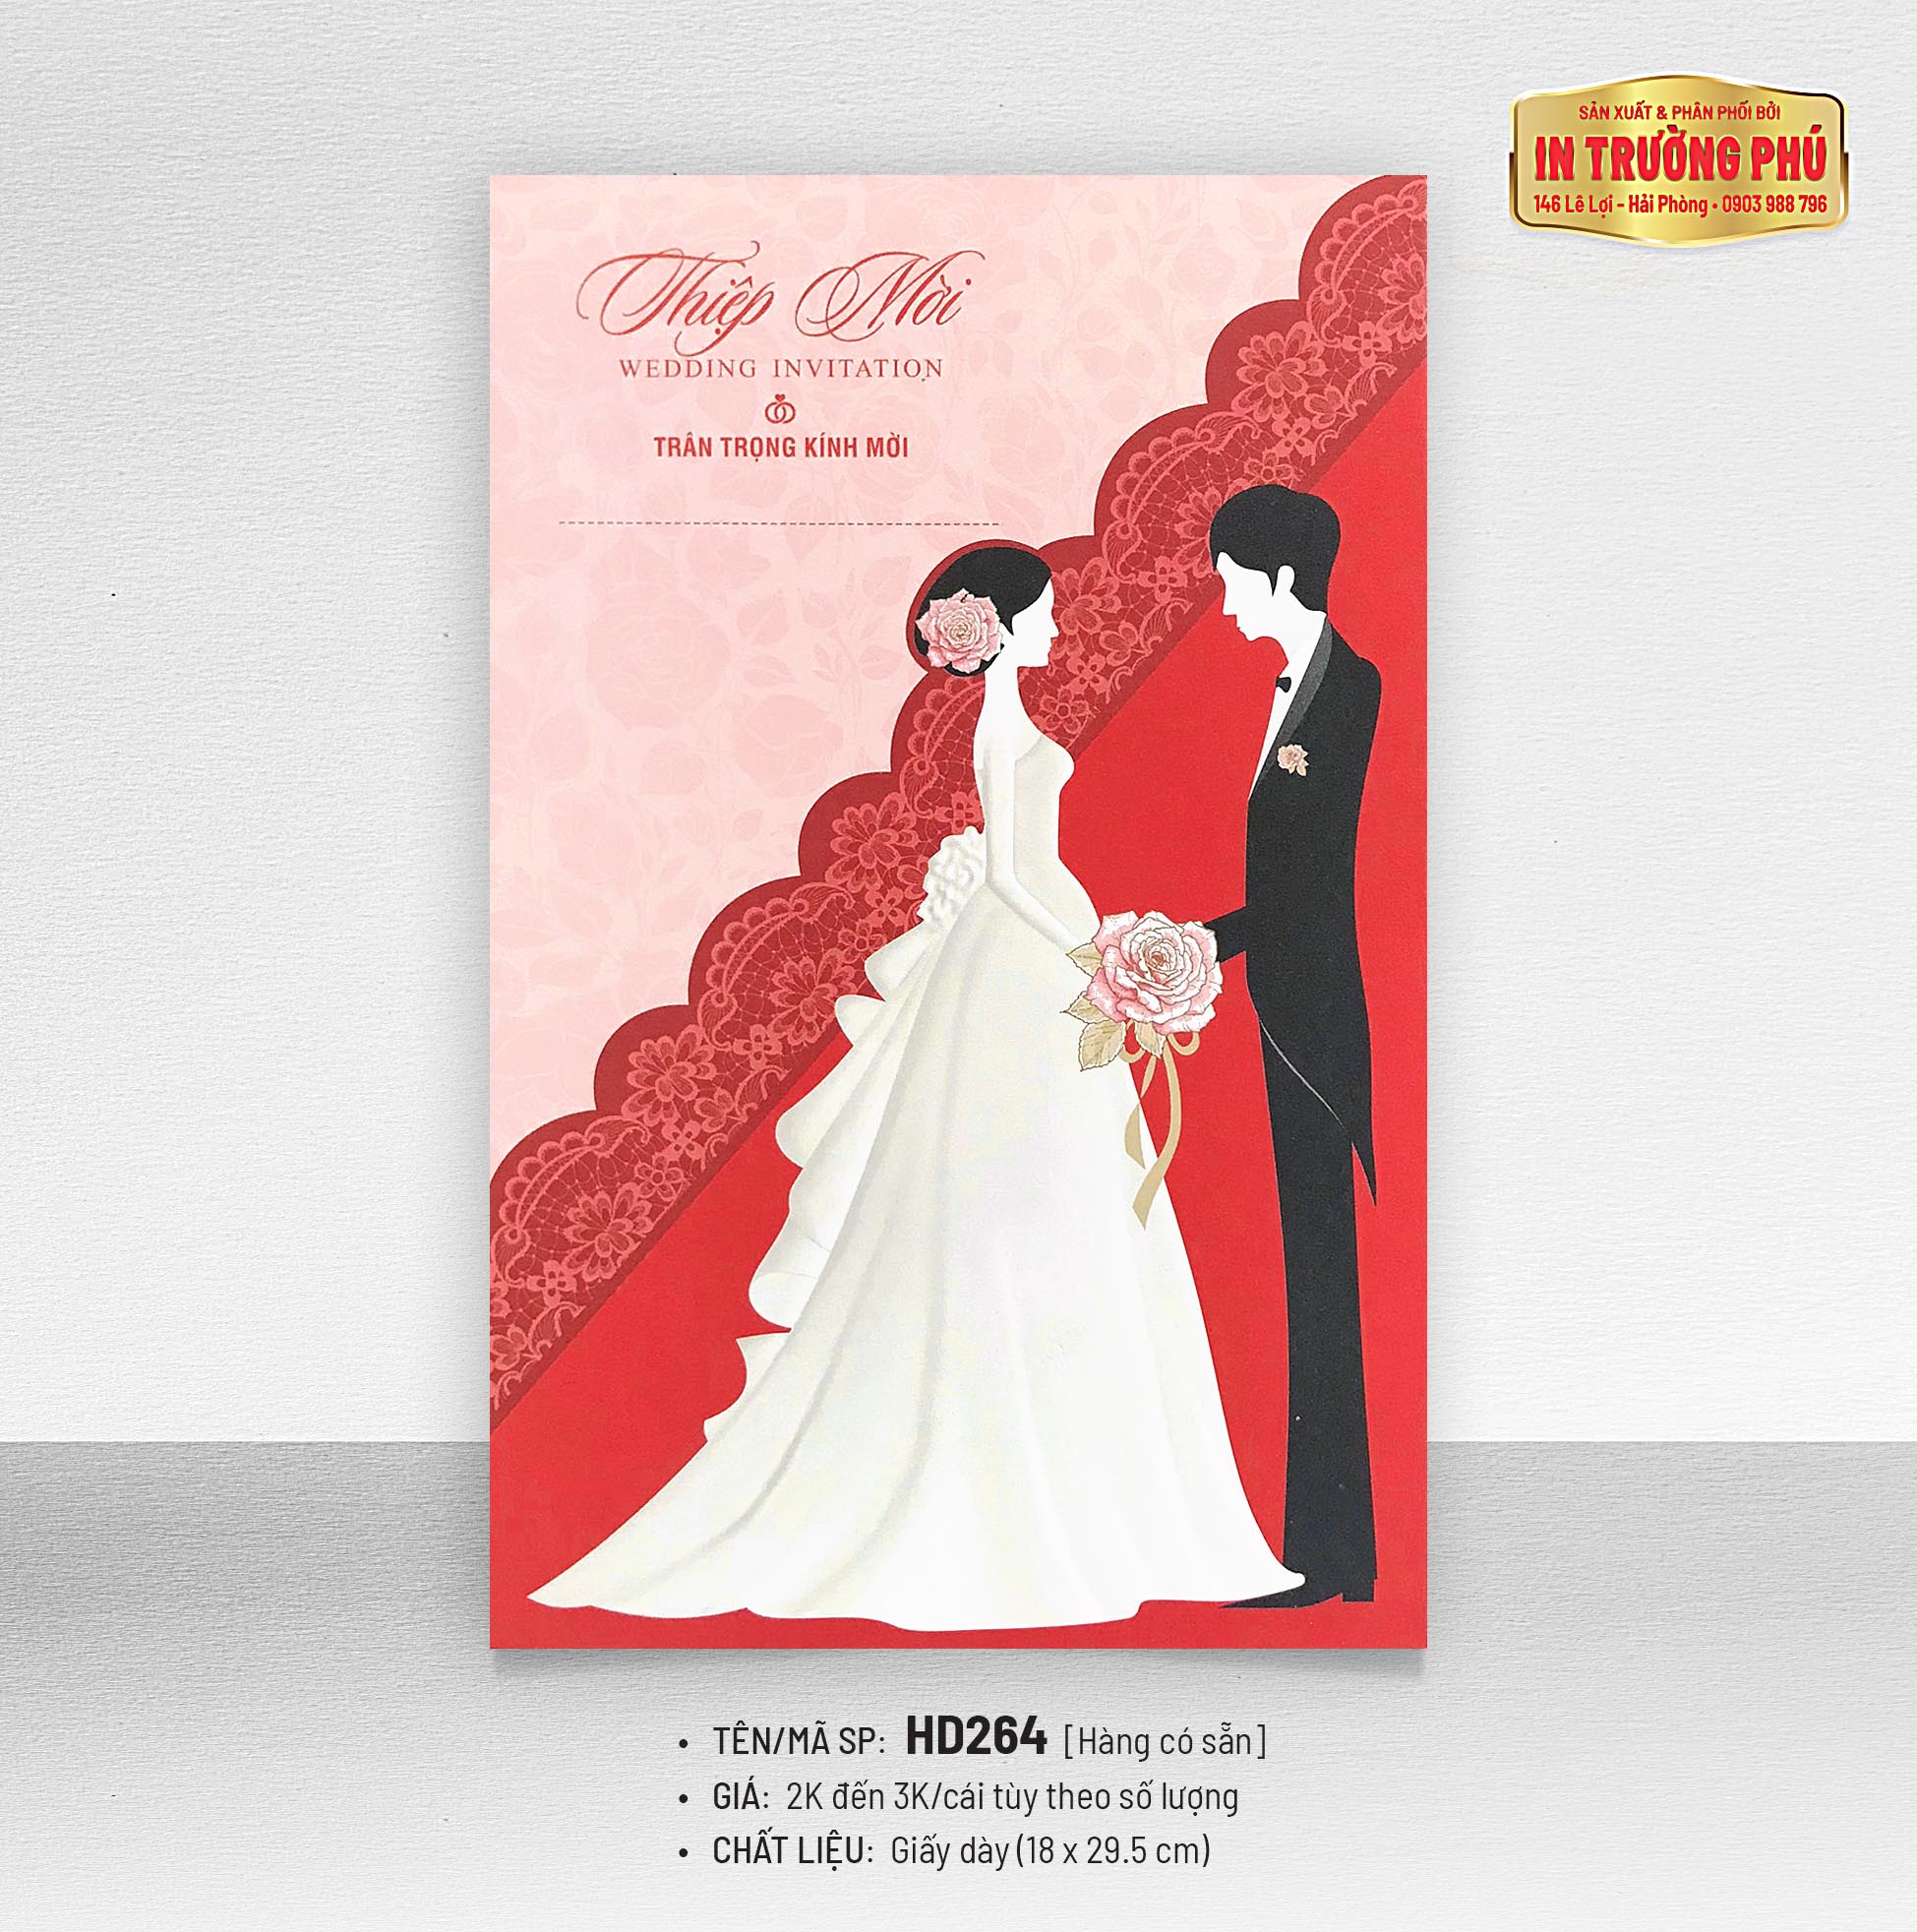 Thiệp cưới GL K10 mang đến sự hòa quyện hoàn hảo giữa phong cách hiện đại và truyền thống. Với kiểu dáng tinh tế, màu sắc đa dạng và chất liệu mềm mại, đây sẽ là sự lựa chọn tuyệt vời cho đám cưới của bạn.